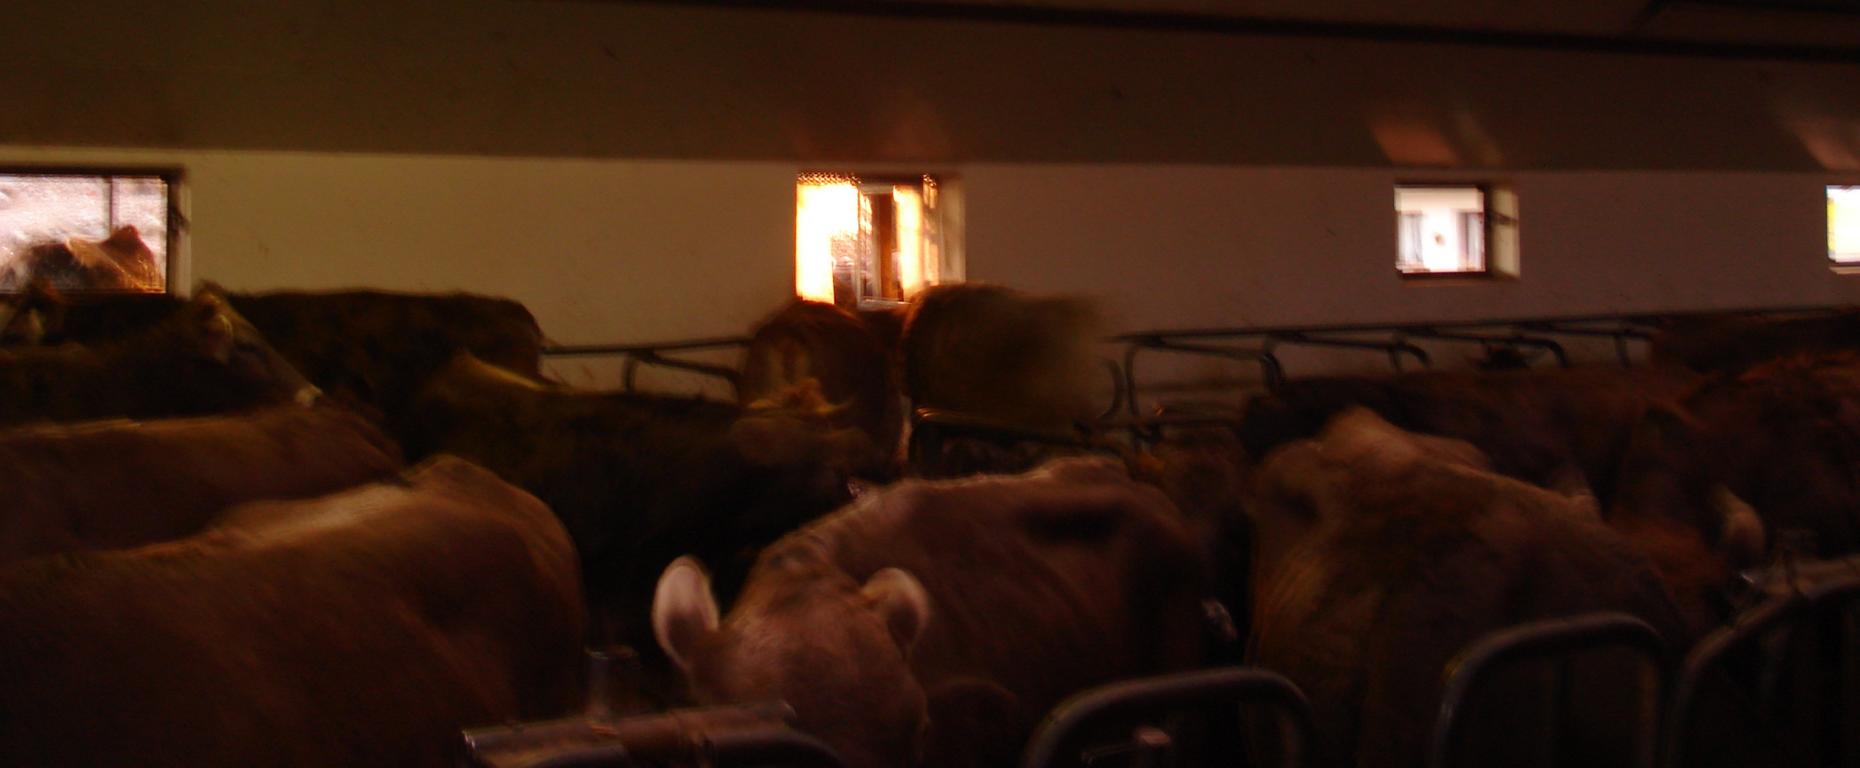 Foto: Regina Franziska Rau - Der Bereich der Kühe vom Bauern Süss - sie dürfen nun alle hier leben, ohne etwas leisten zu müssen